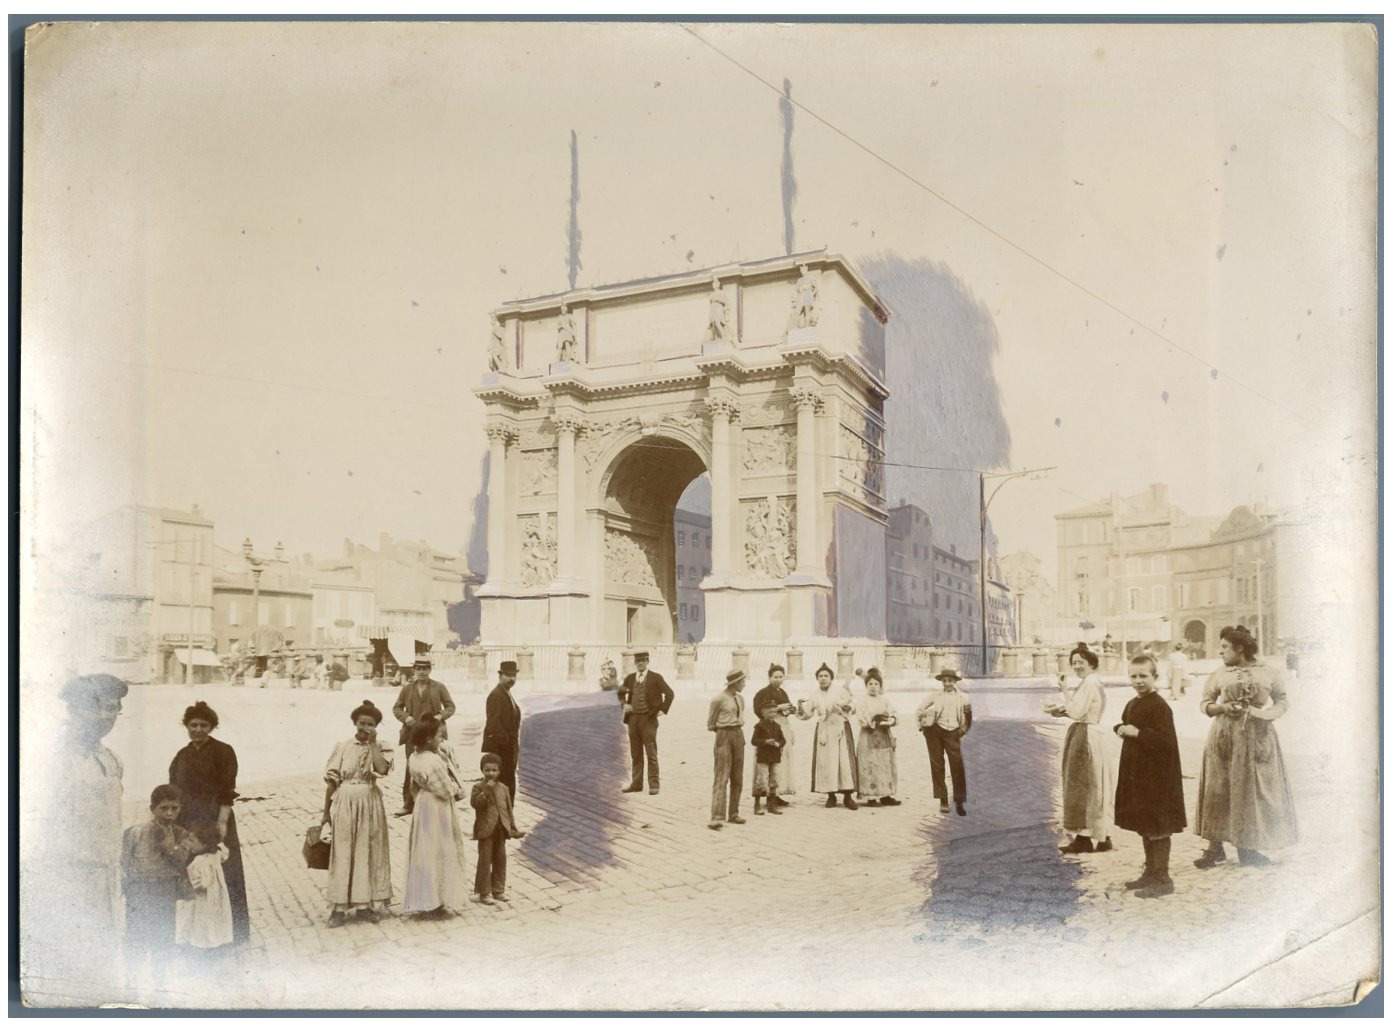 France, Marseille, Porte d'Aix, Arc de Triomphe vintage print.  c print